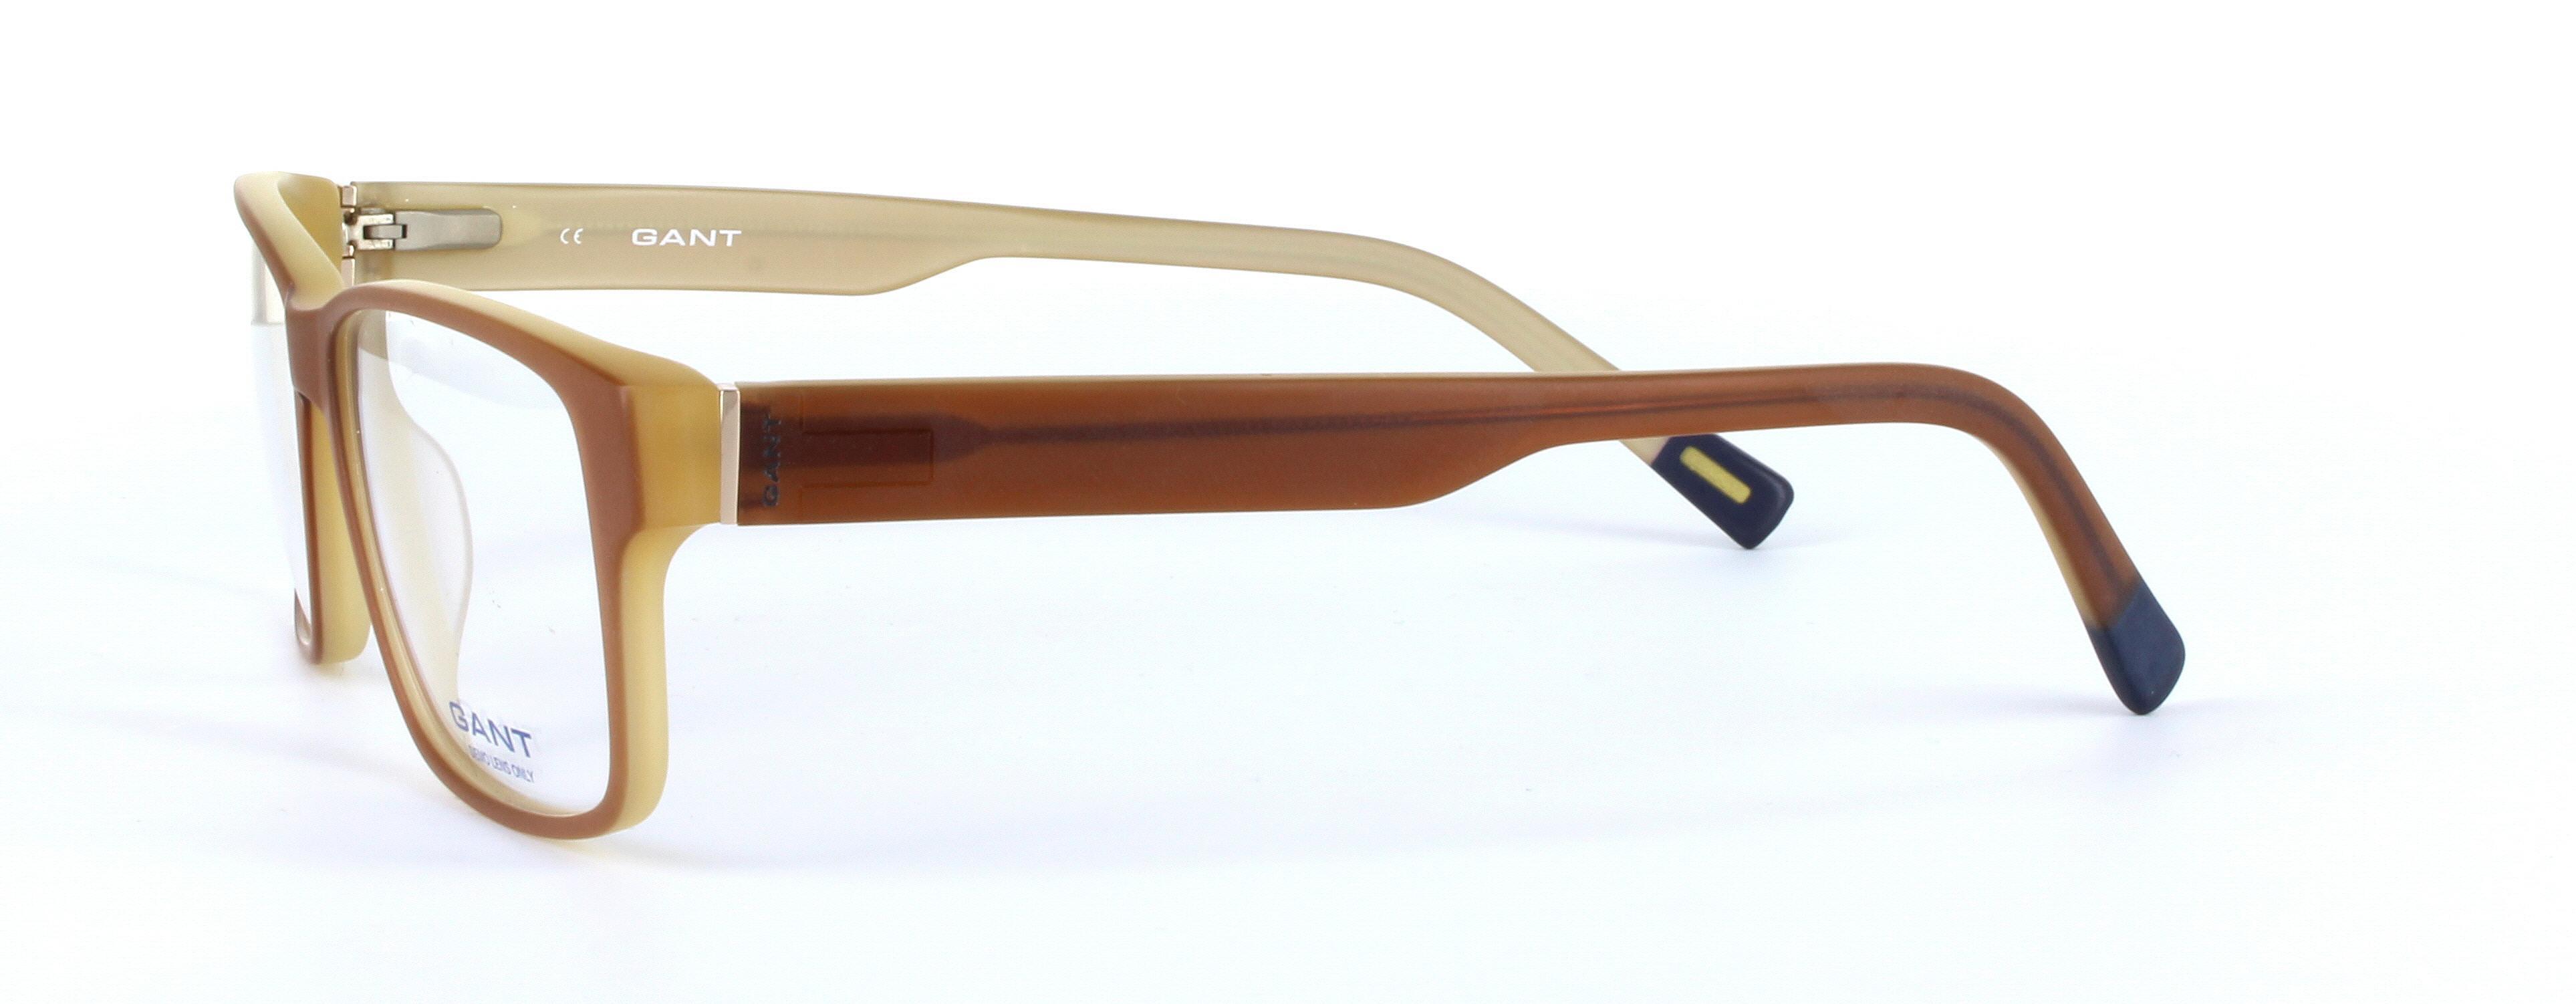 GANT (G3005) Brown Full Rim Rectangular Acetate Glasses - Image View 2